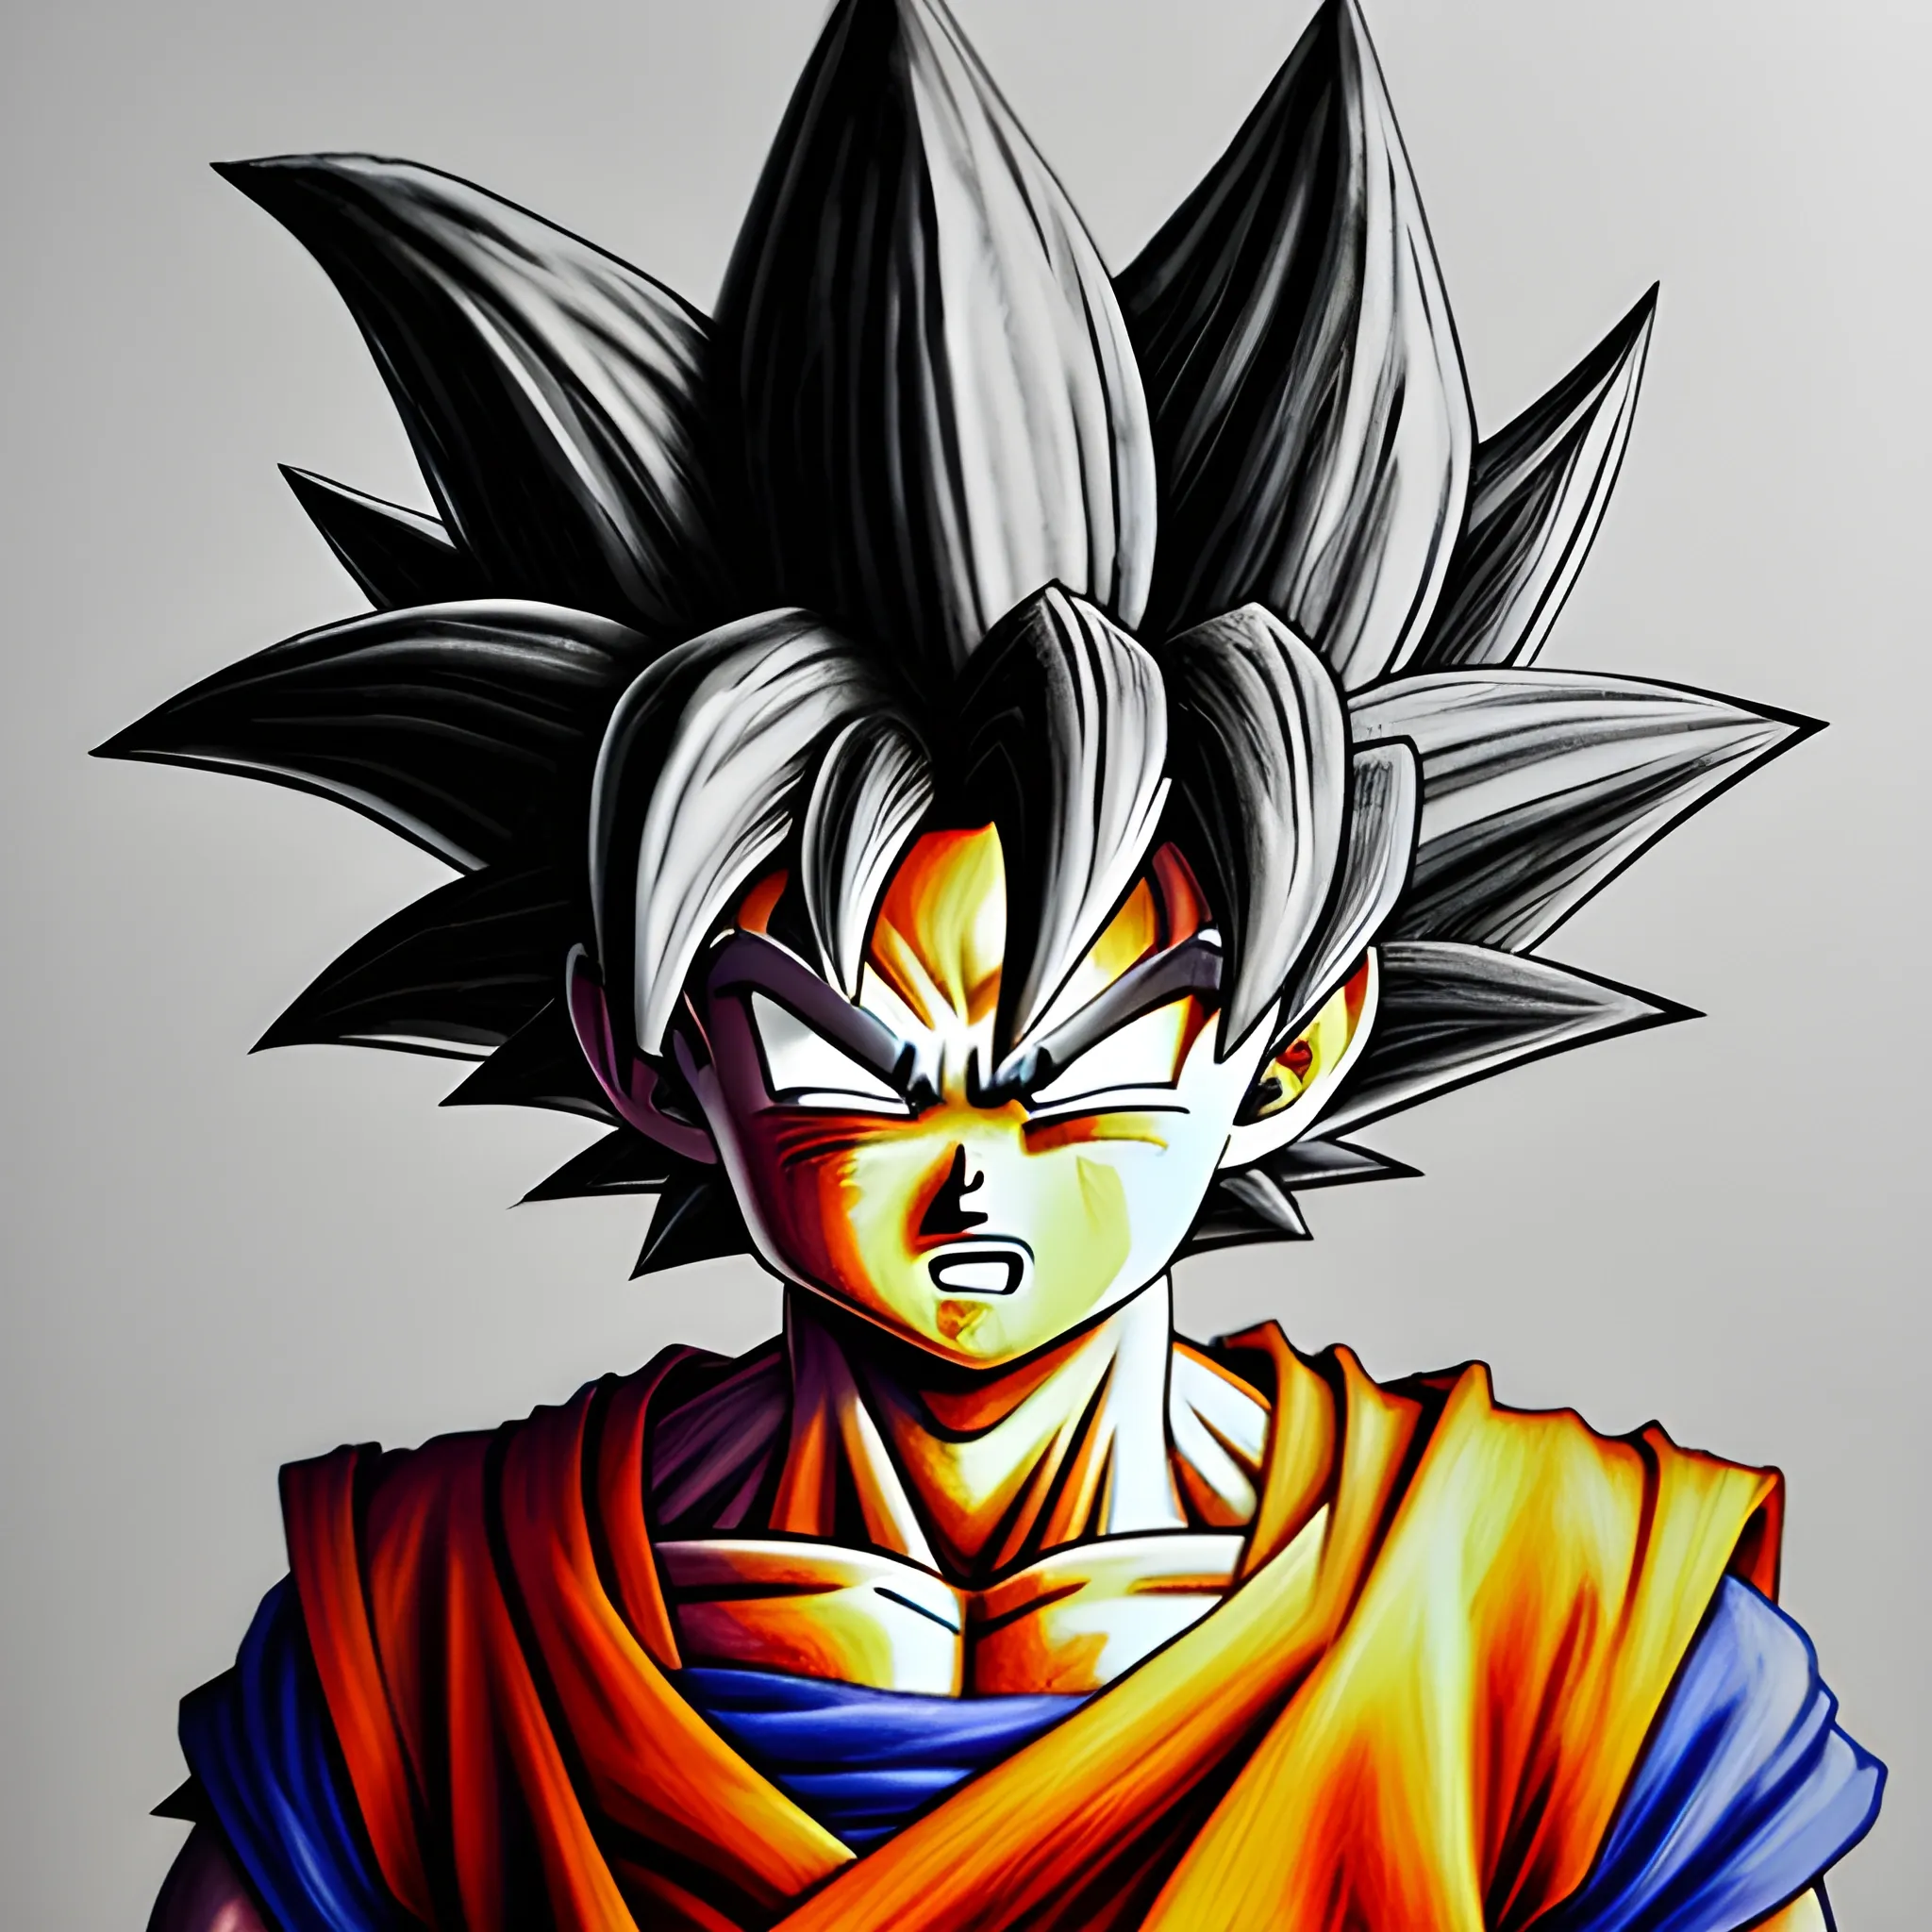 Goku super saiyanjin deus,soltando um came hame ha, 3D, Oil Painting, Pencil Sketch, Trippy, Cartoon, 